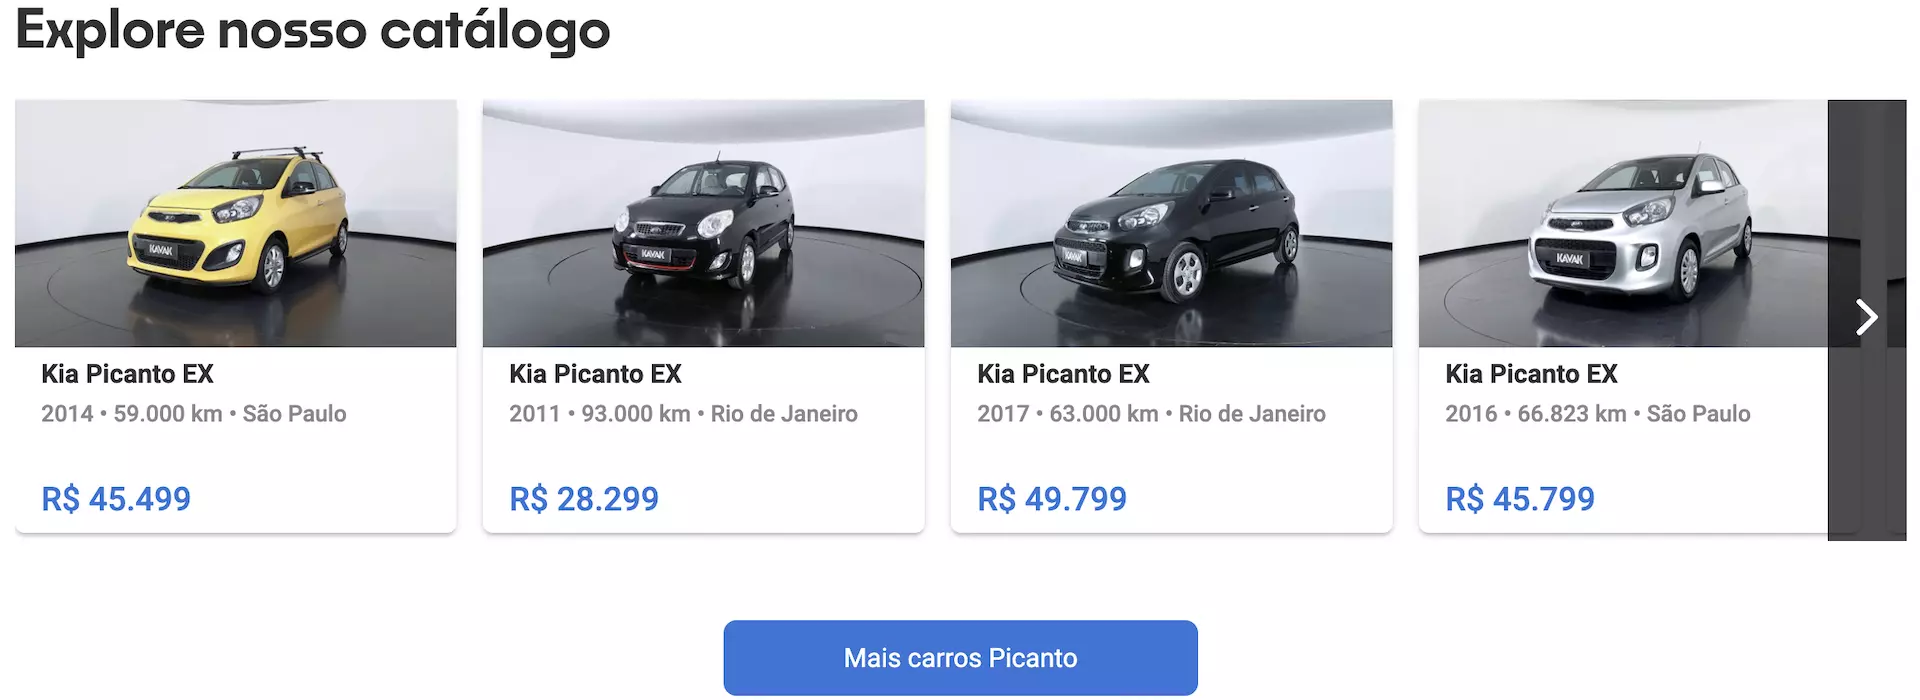 Kia Picanto preços